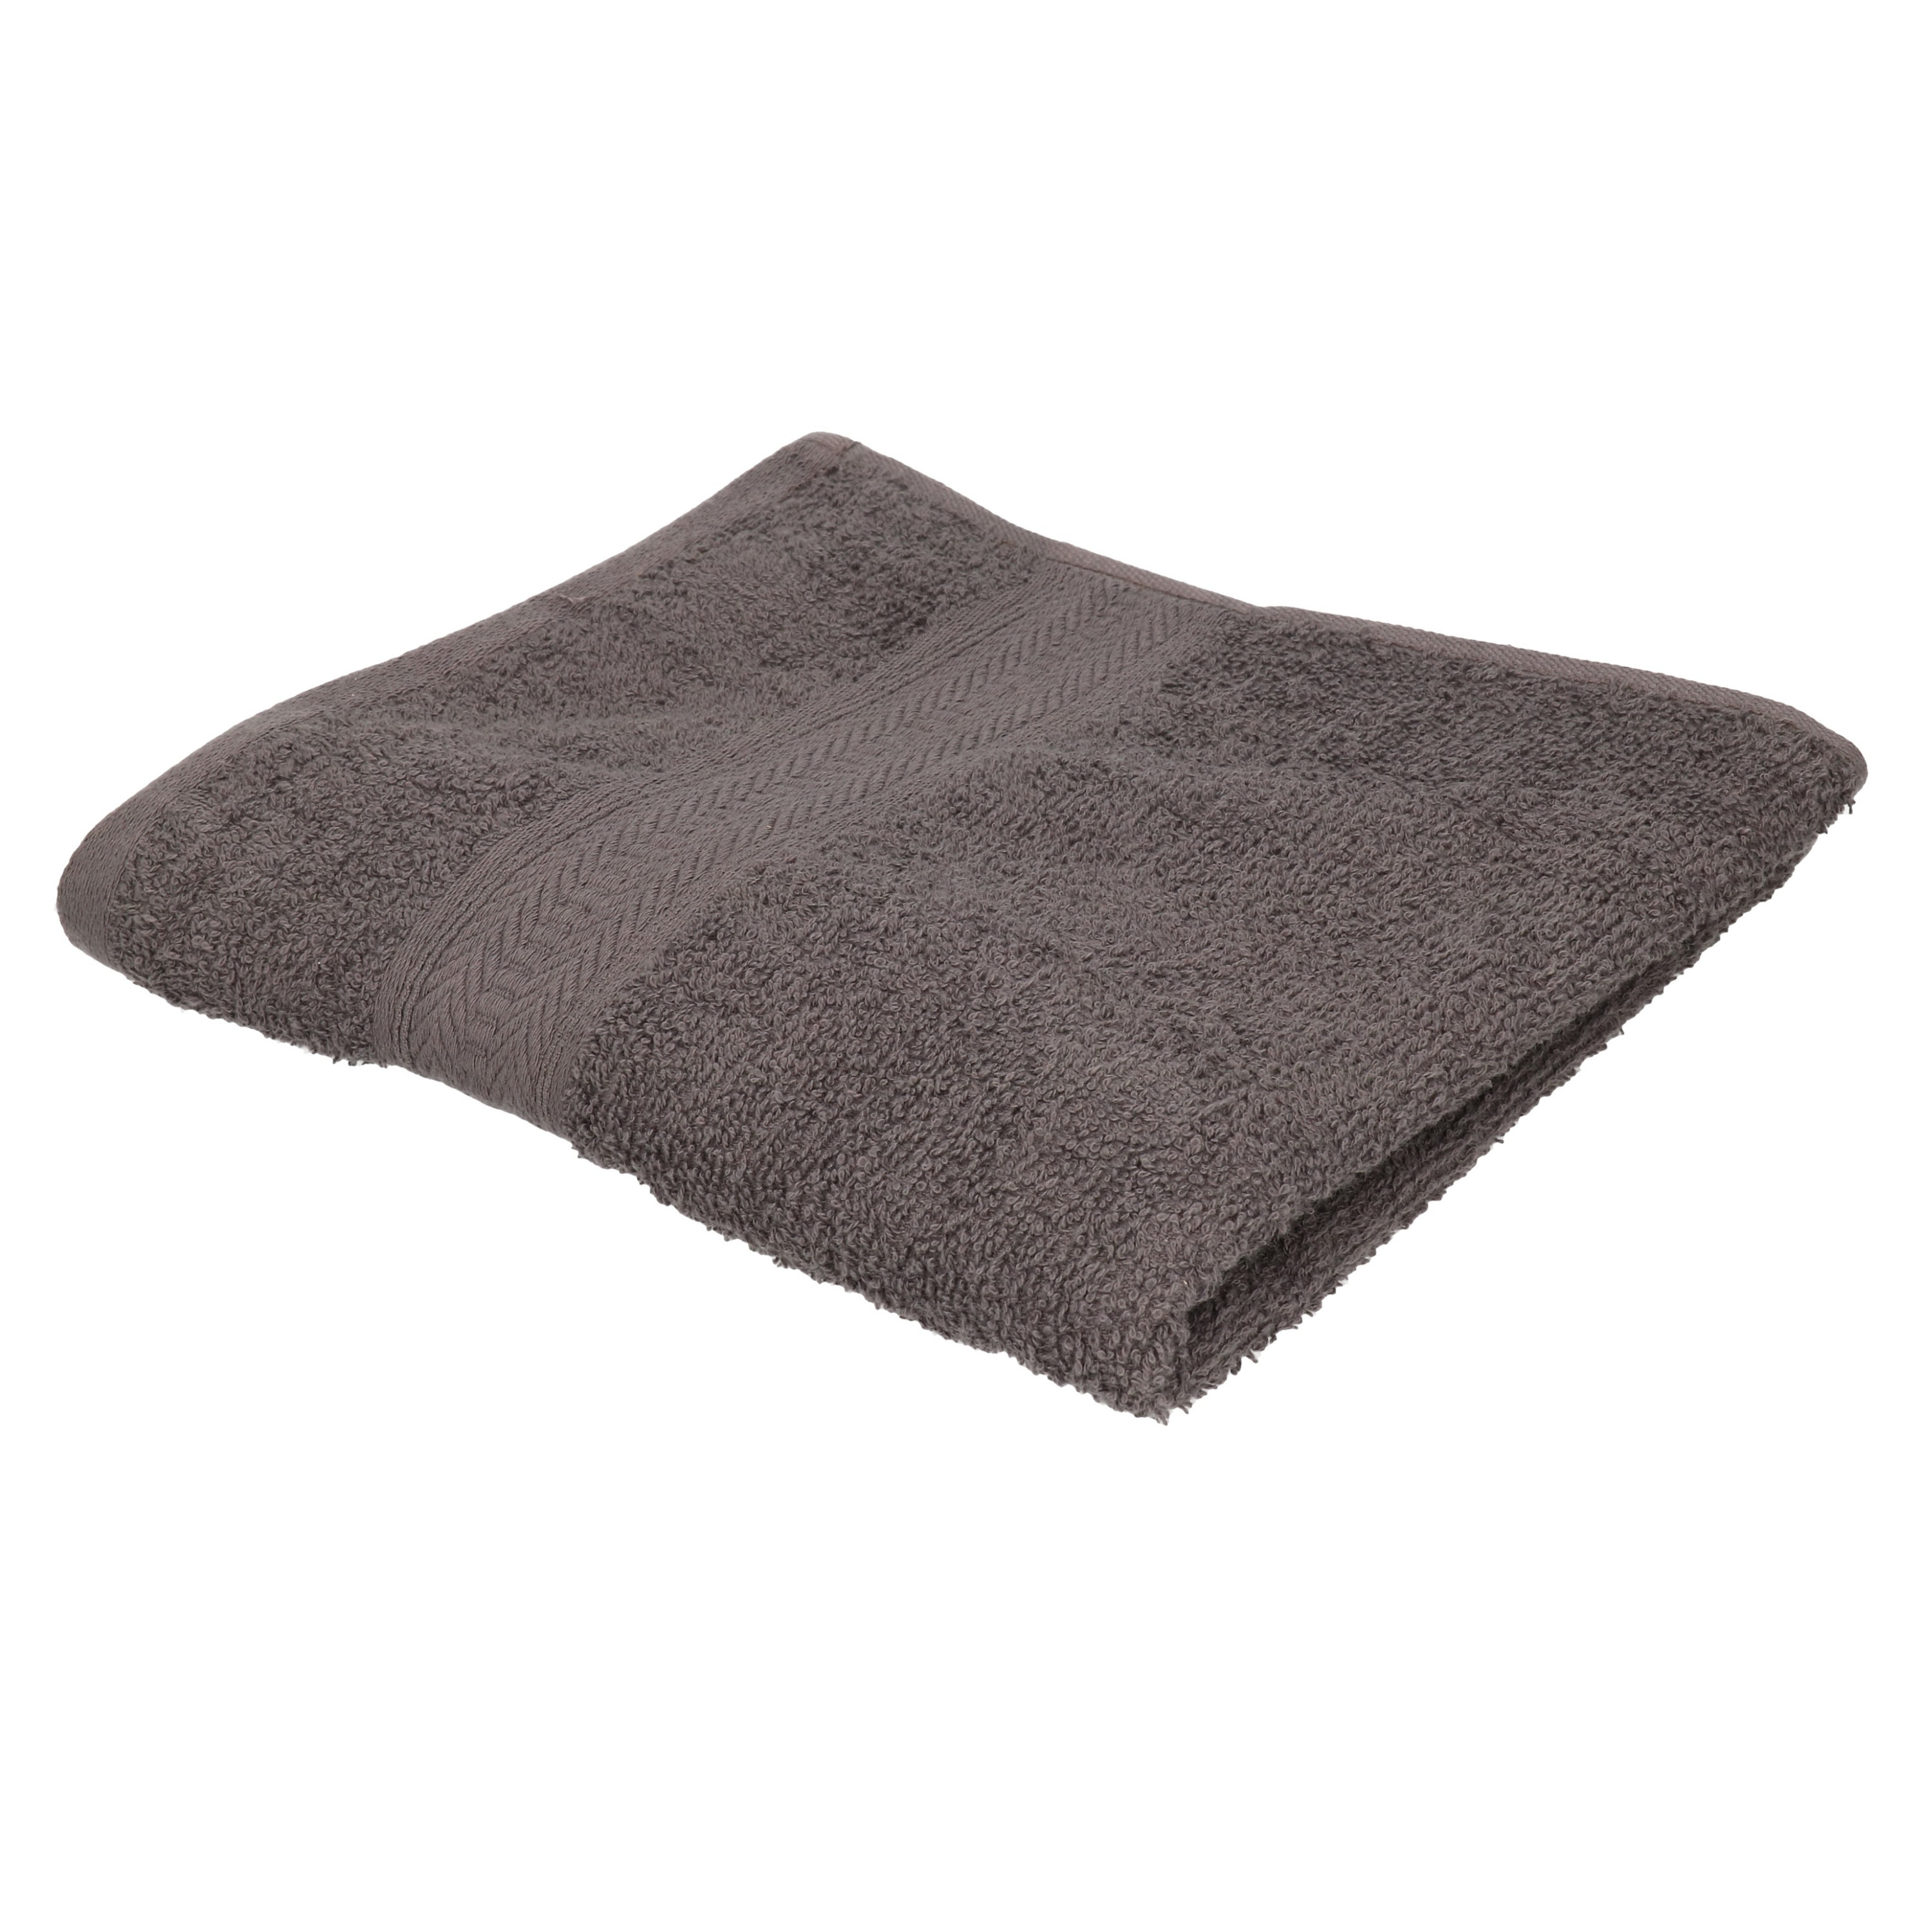 Voordelige handdoek grijs 50 x 100 cm 420 grams